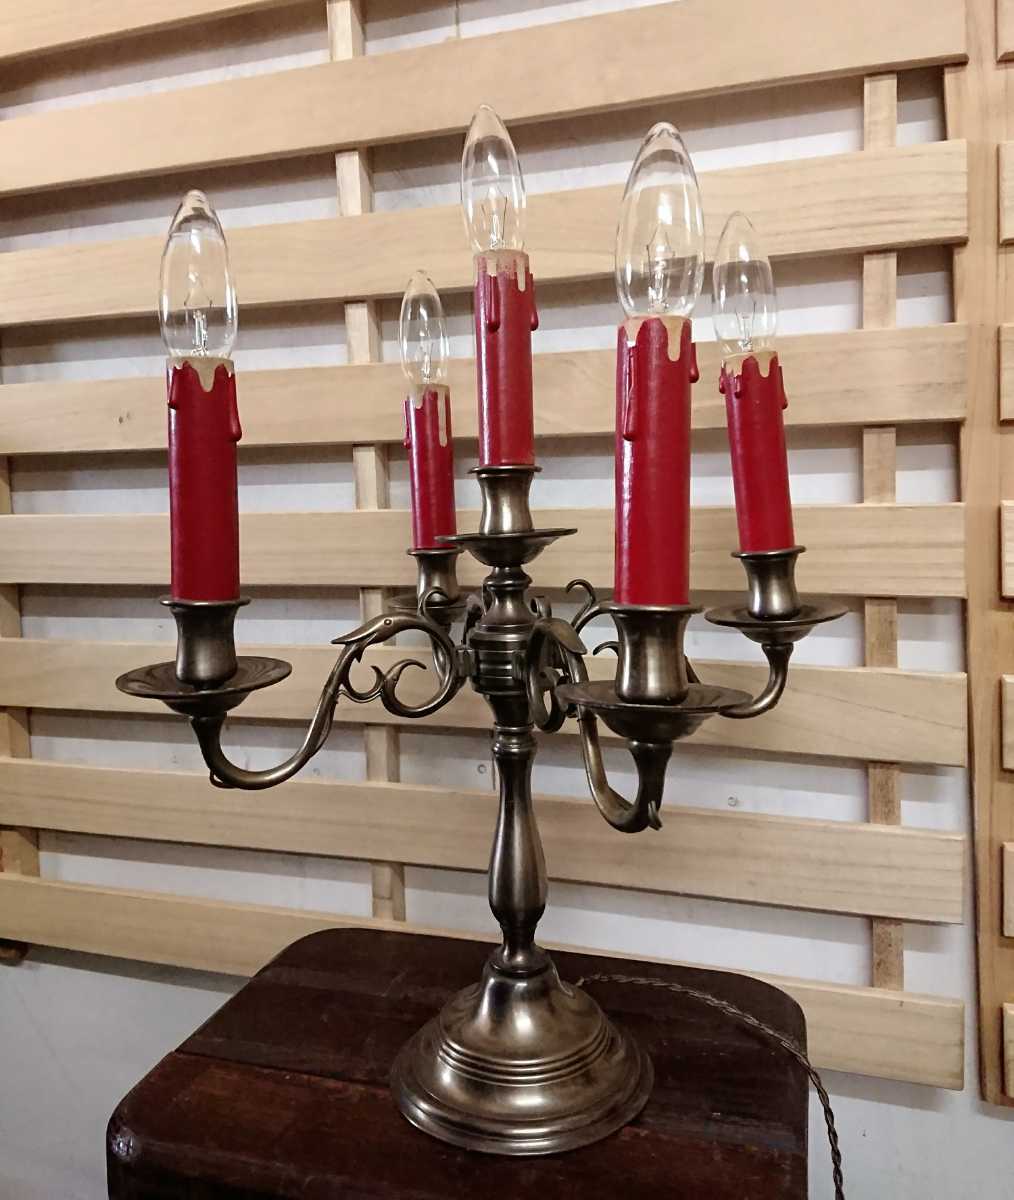 フランスアンティーク スタンドライト キャンドルホルダー型 テーブルランプ 蝋燭 5灯 カフェ インテリア 各種加工可能 H1_画像2